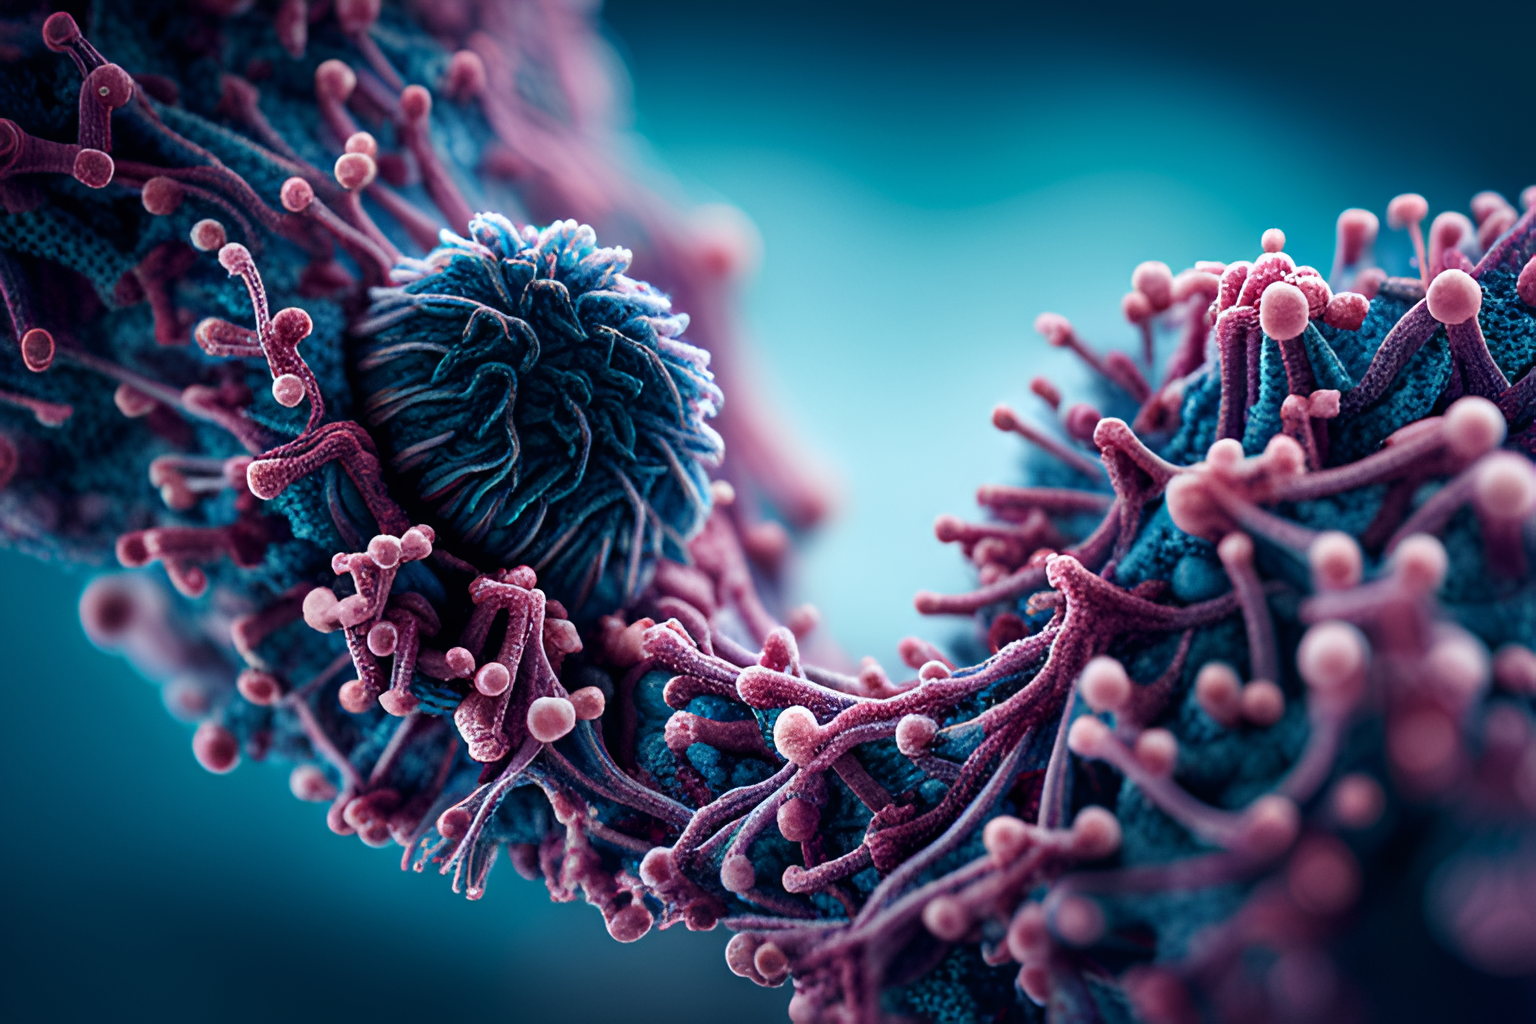 Virus particle - scientific image